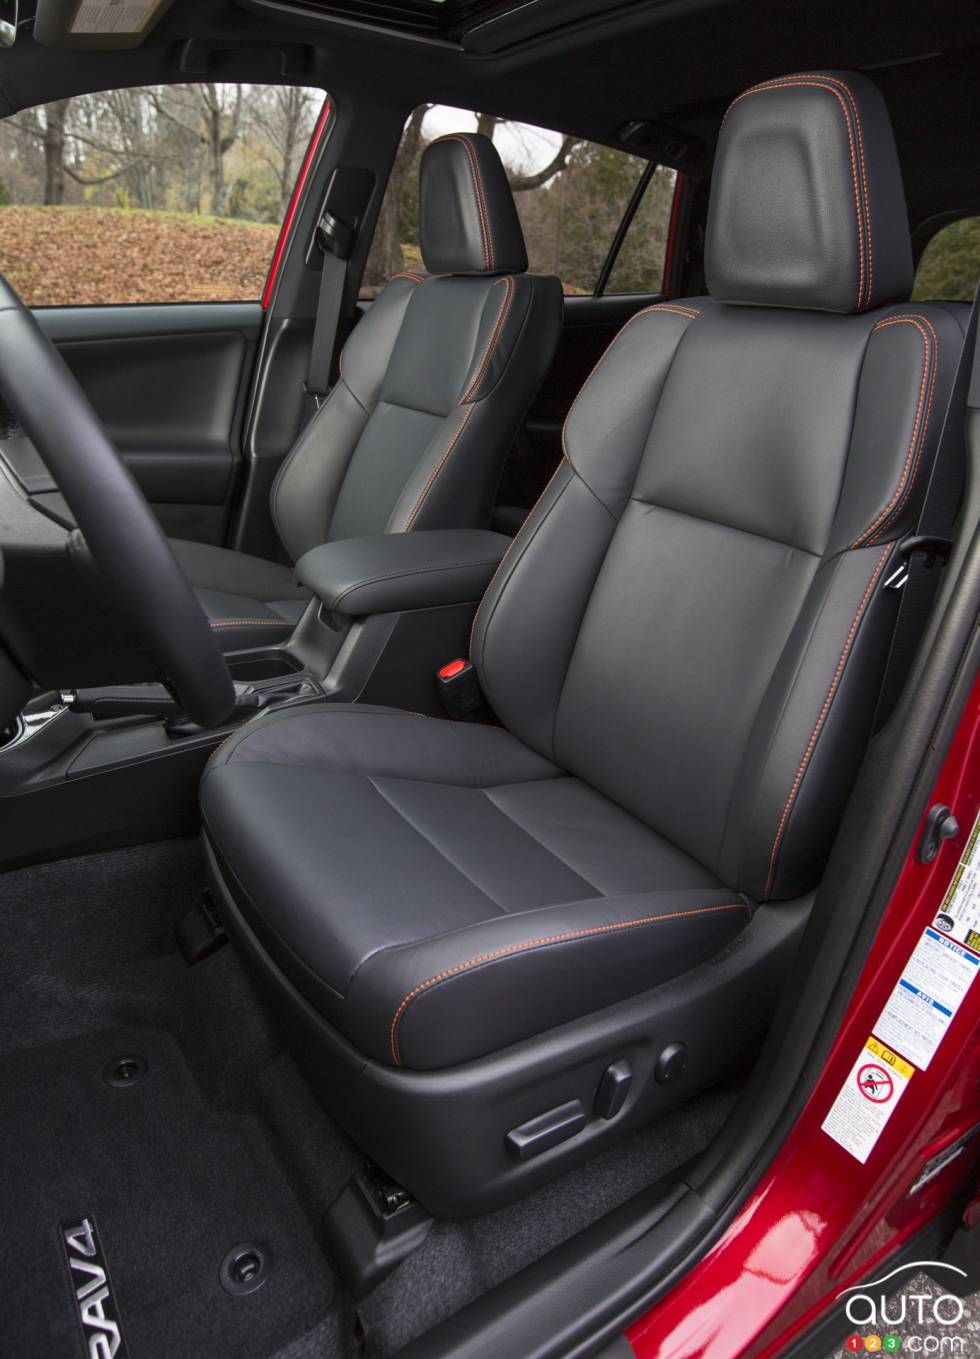 2016 Toyota RAV4 front seats